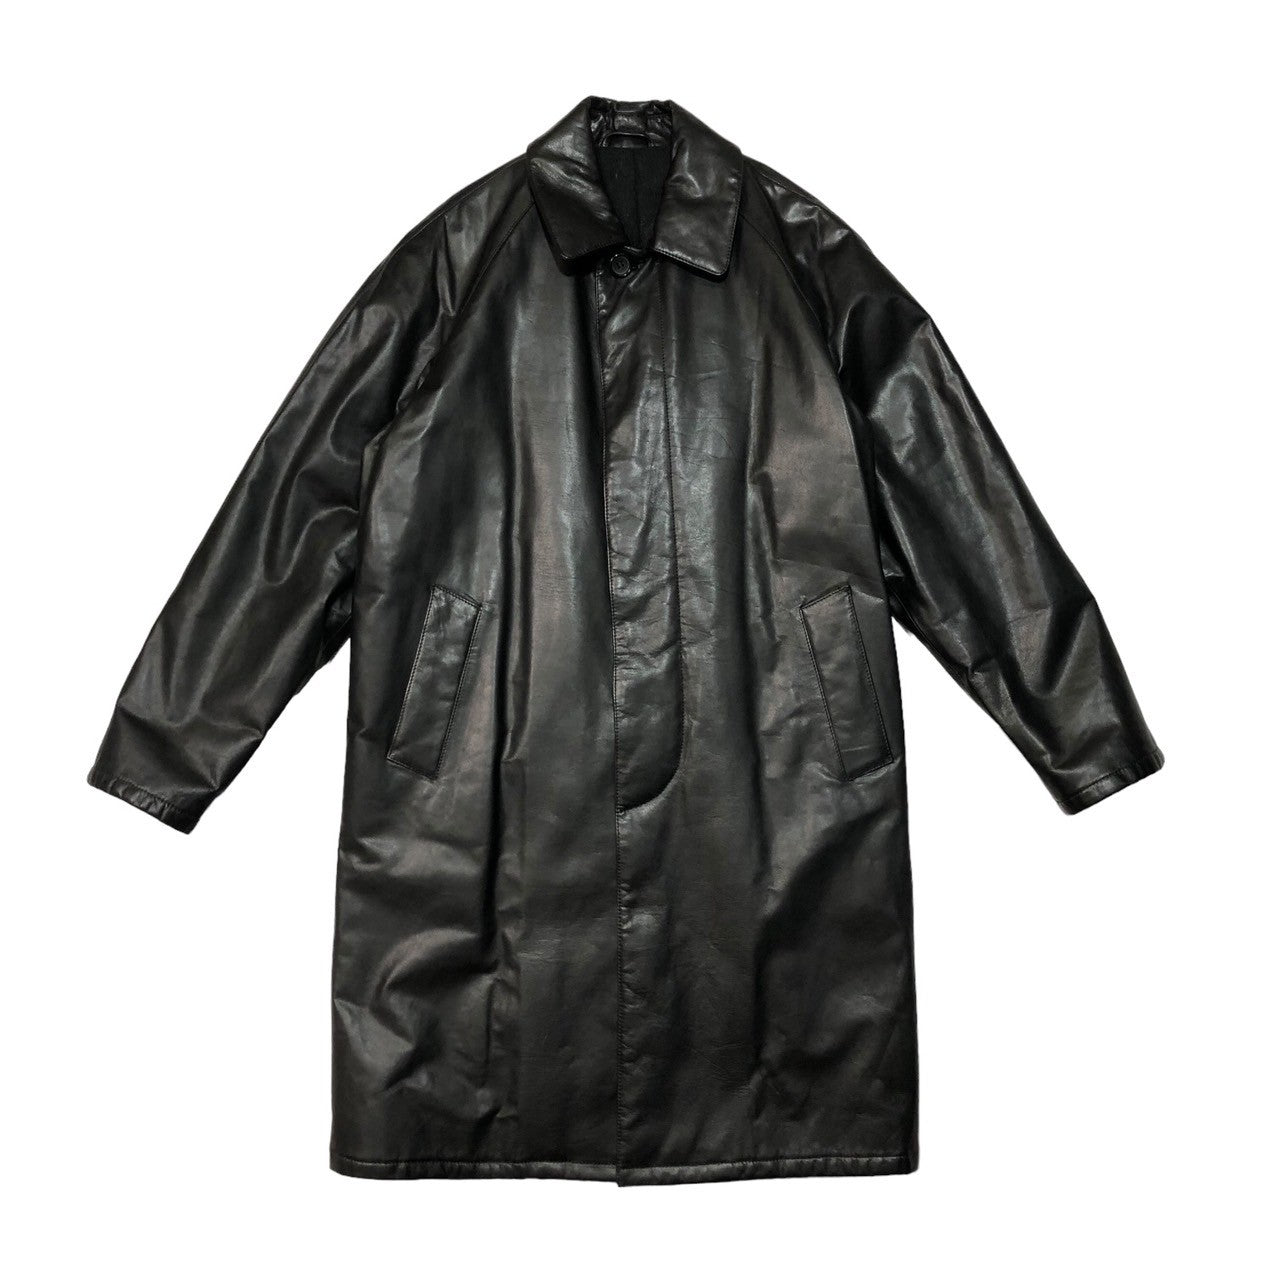 Salfra(サルフラ) 90's leather stainless steel collar coat レザー ステンカラー コート ロング 46(M程度) ブラック 90年代 イタリア製